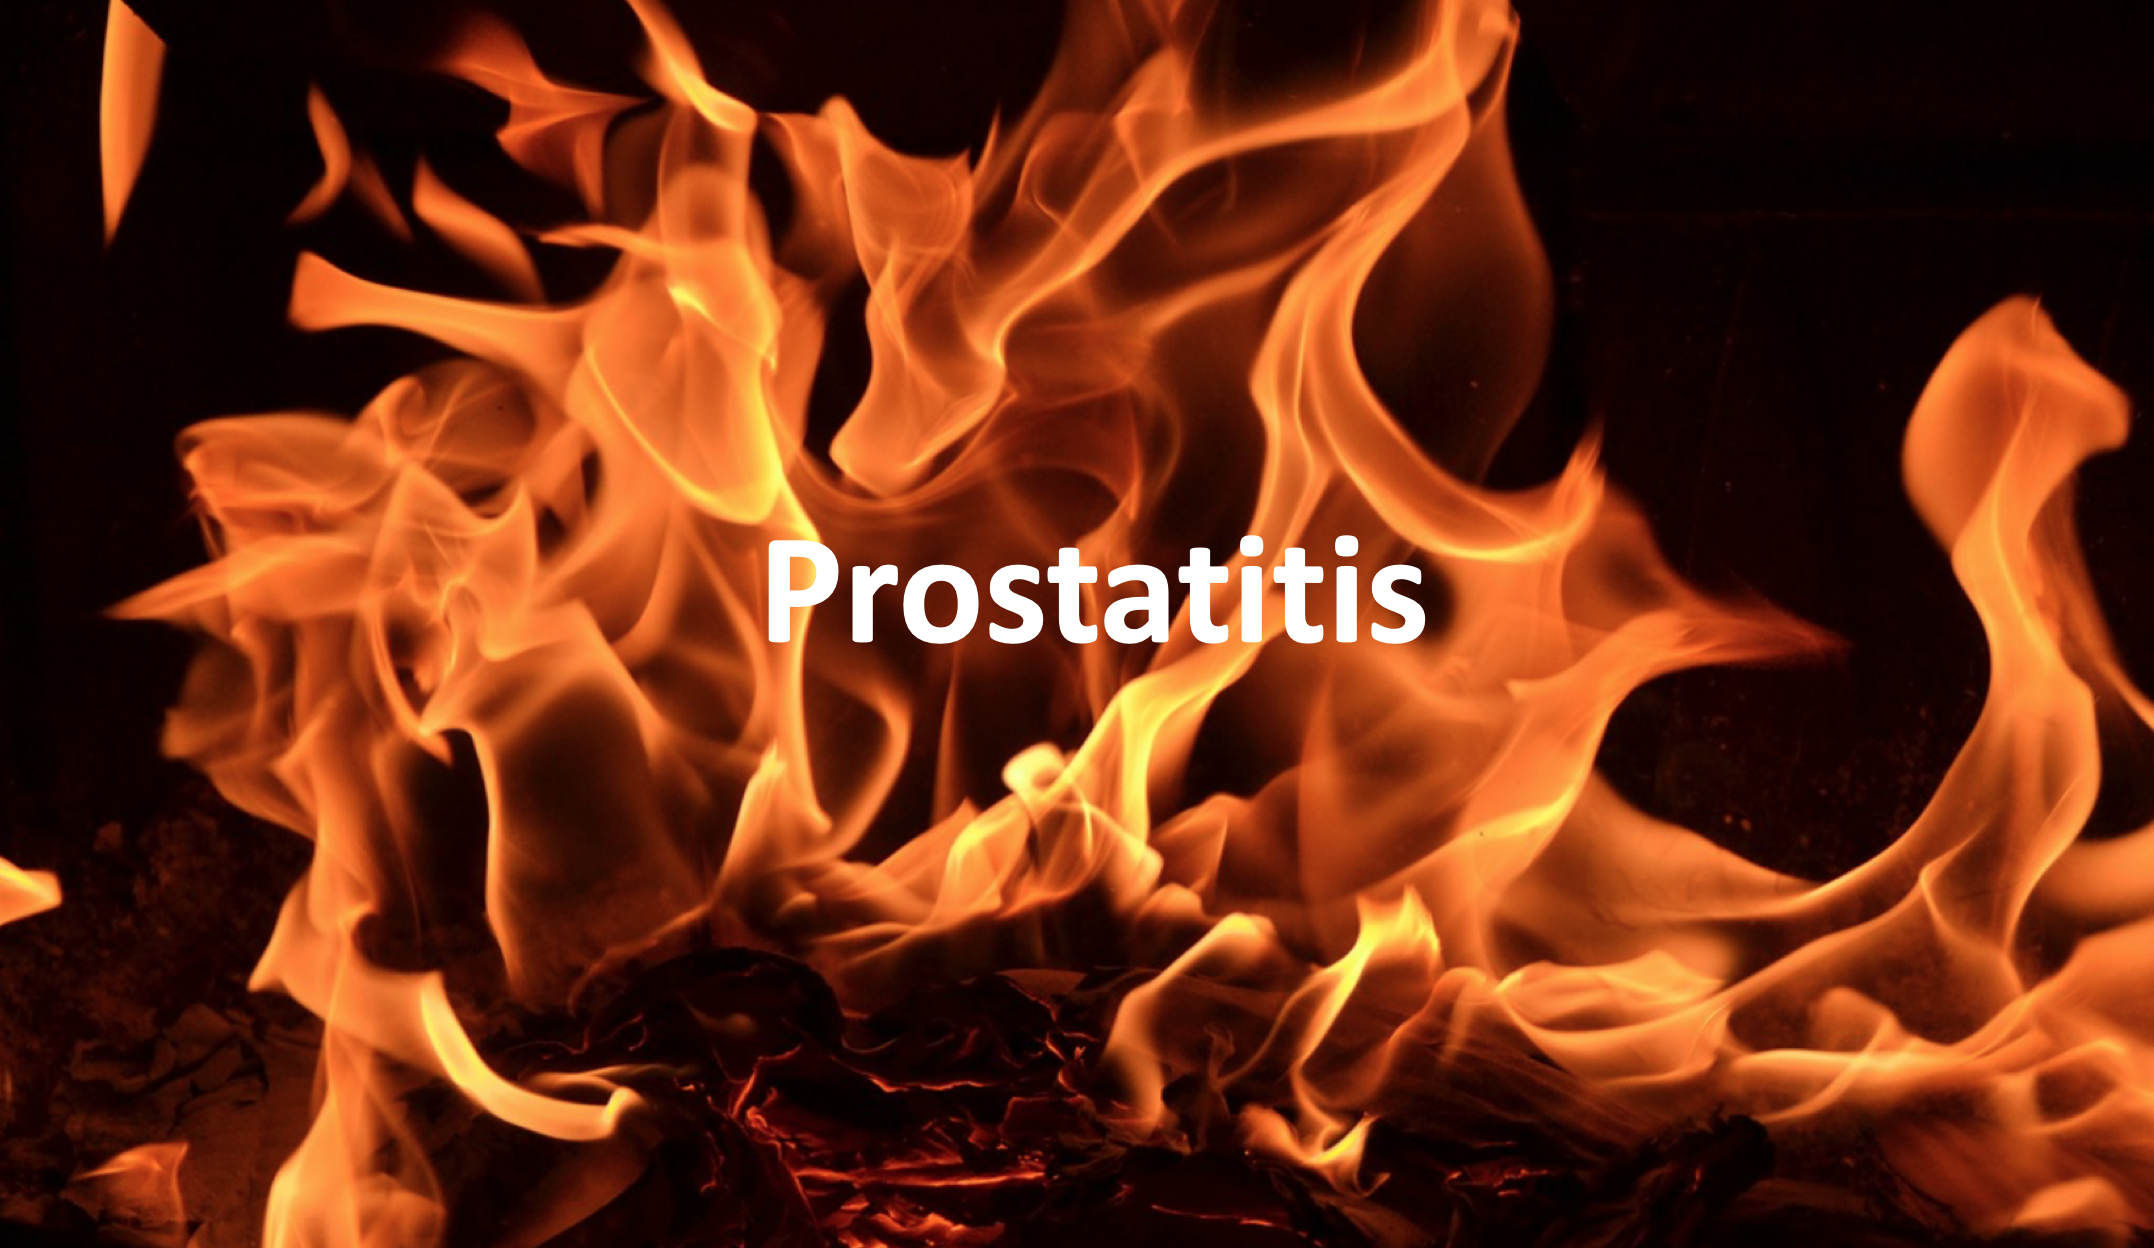 értsd meg a prostatitiset prostate calcification treatment